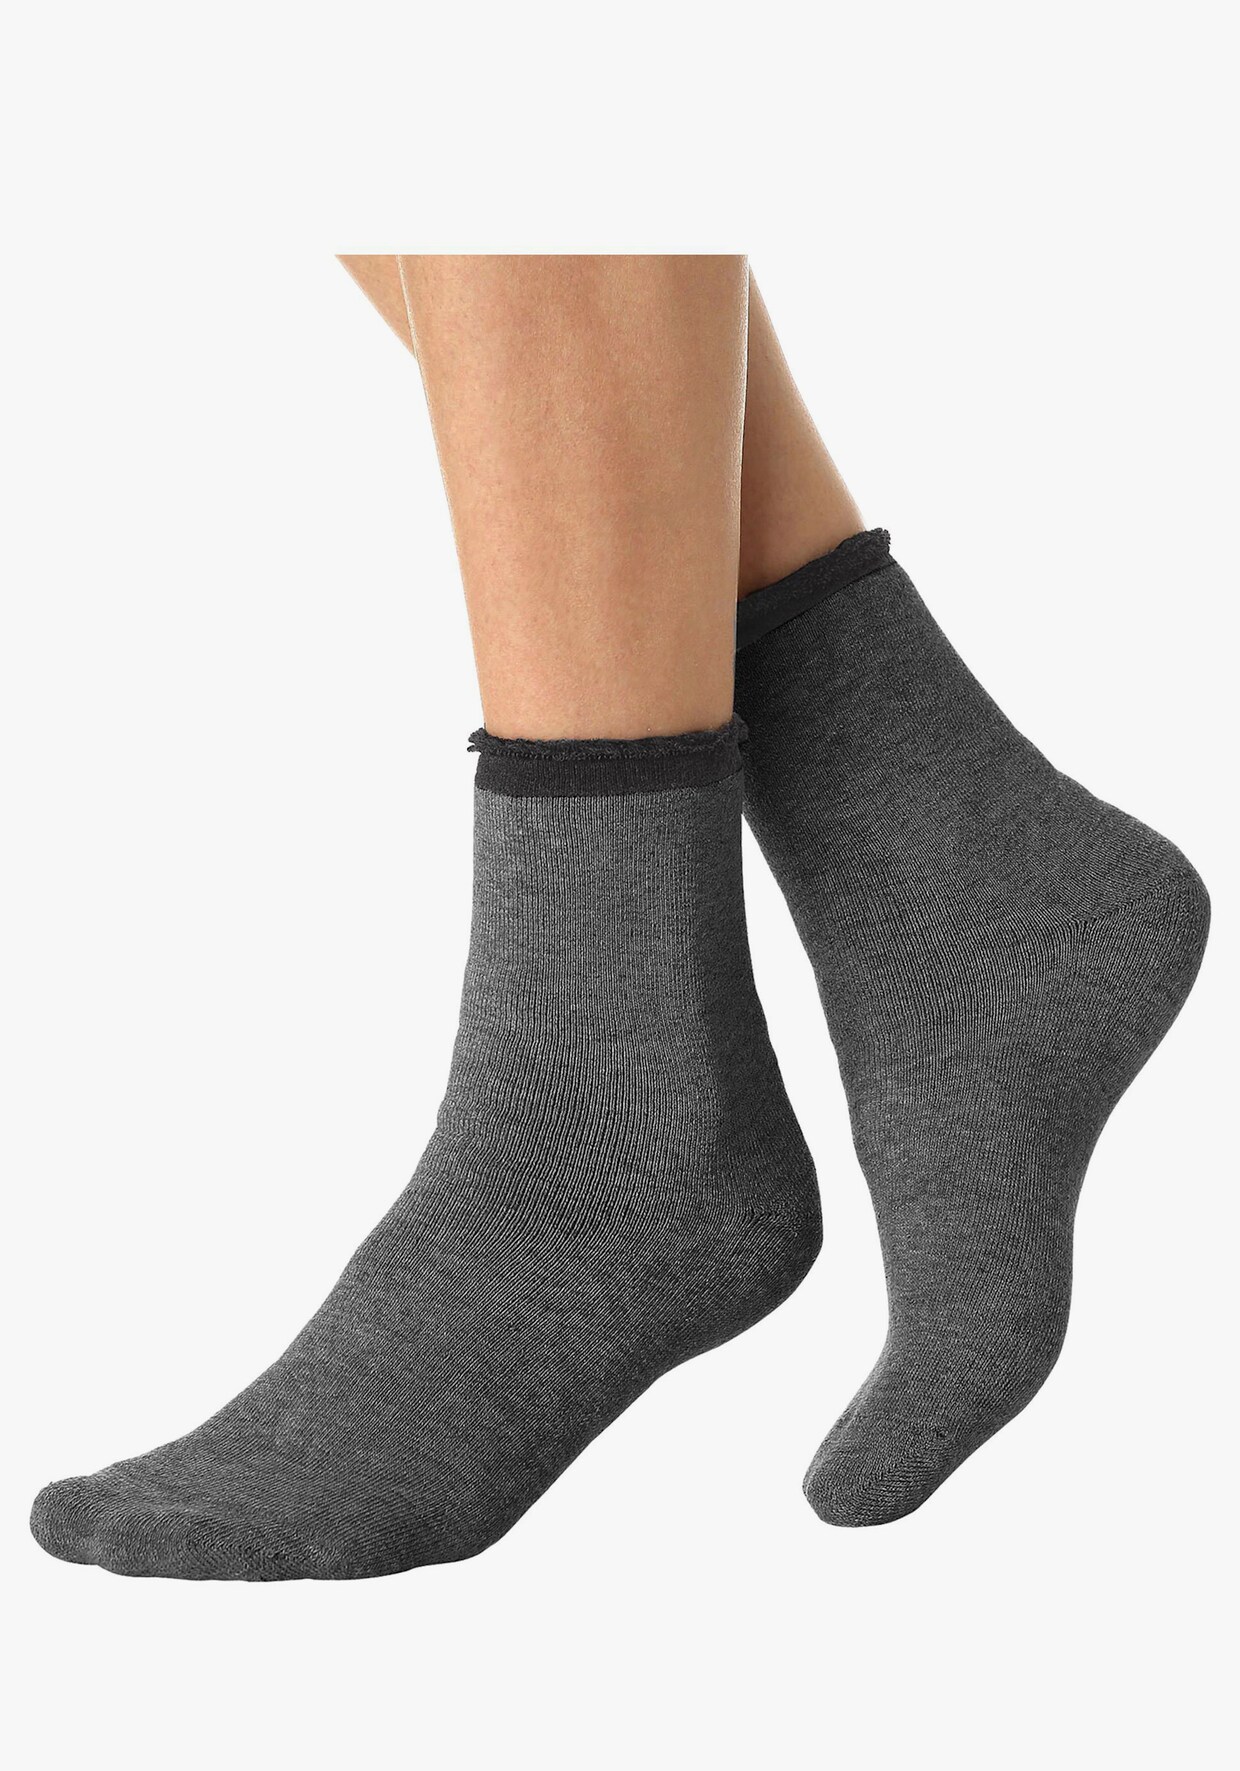 Lavana Warme sokken - 1x beige + 1x grijs + 1x lichtgrijs + 1x antraciet